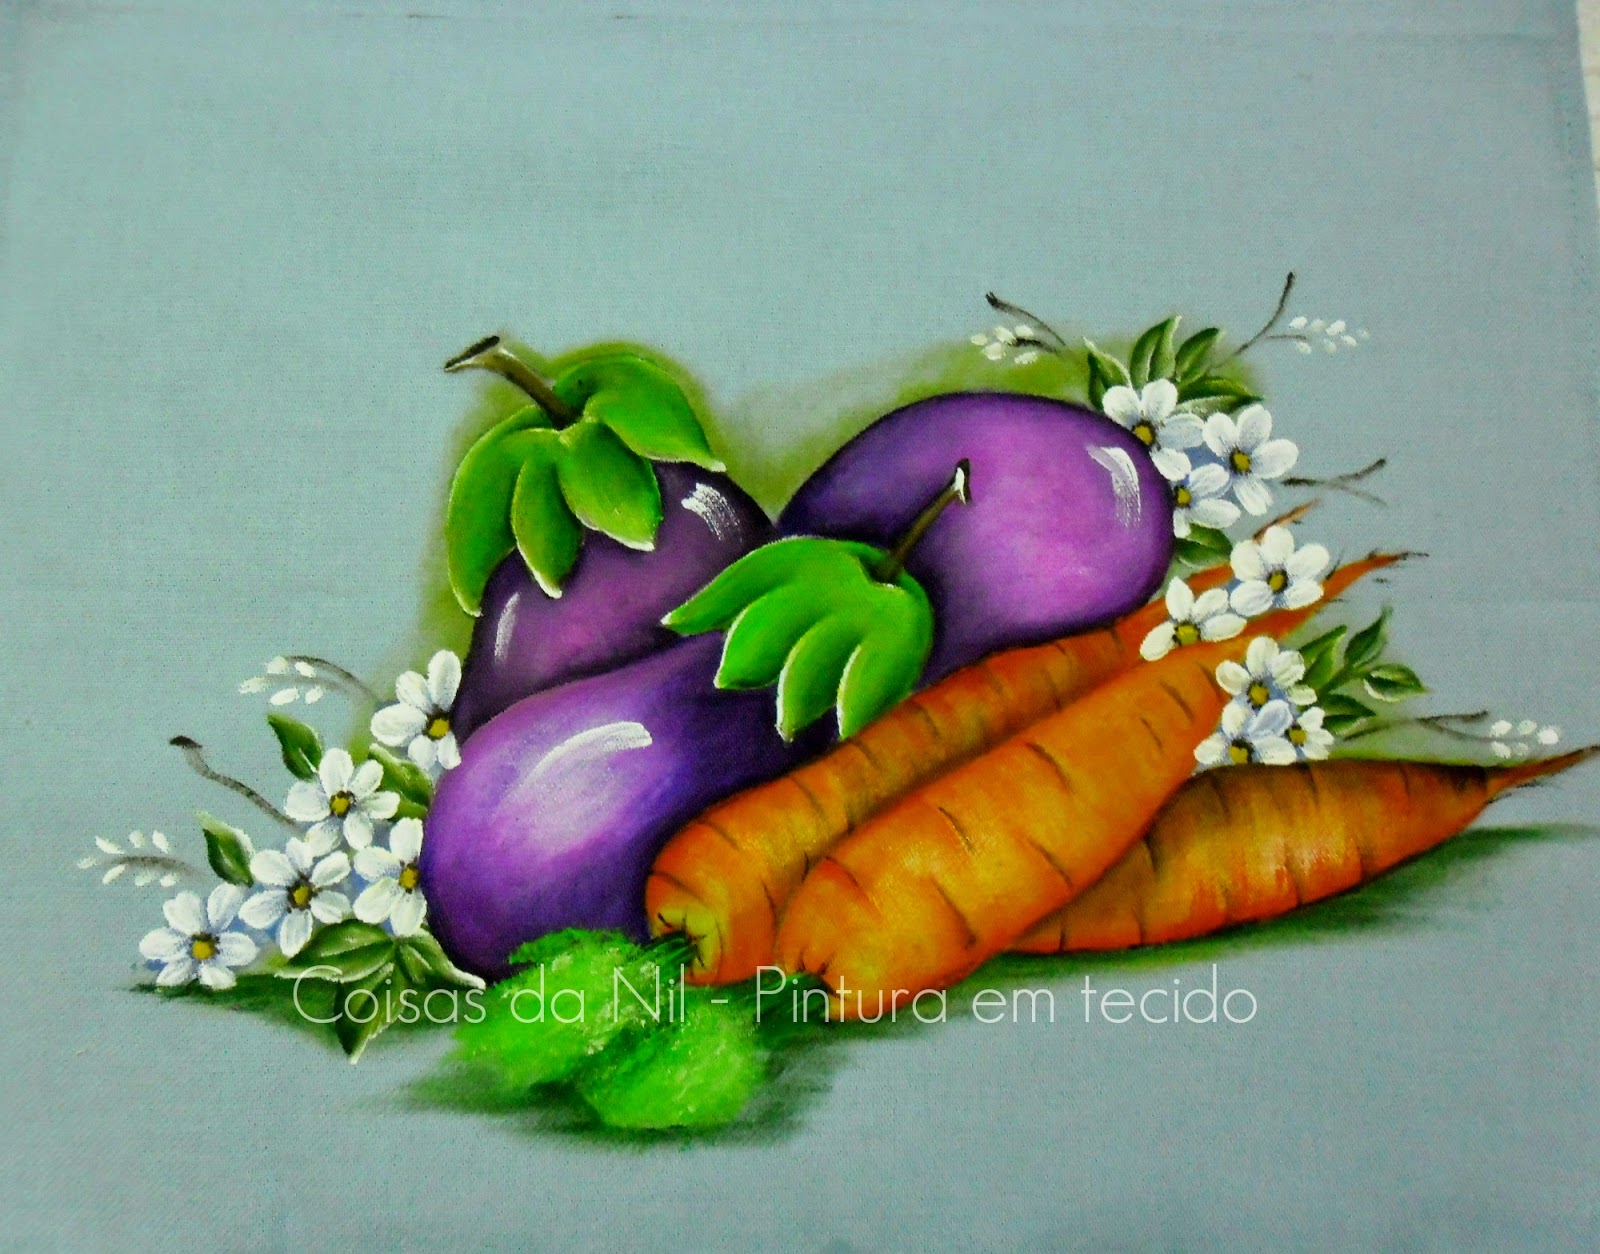 pintura em tecido pano de copa com beringelas e cenouras